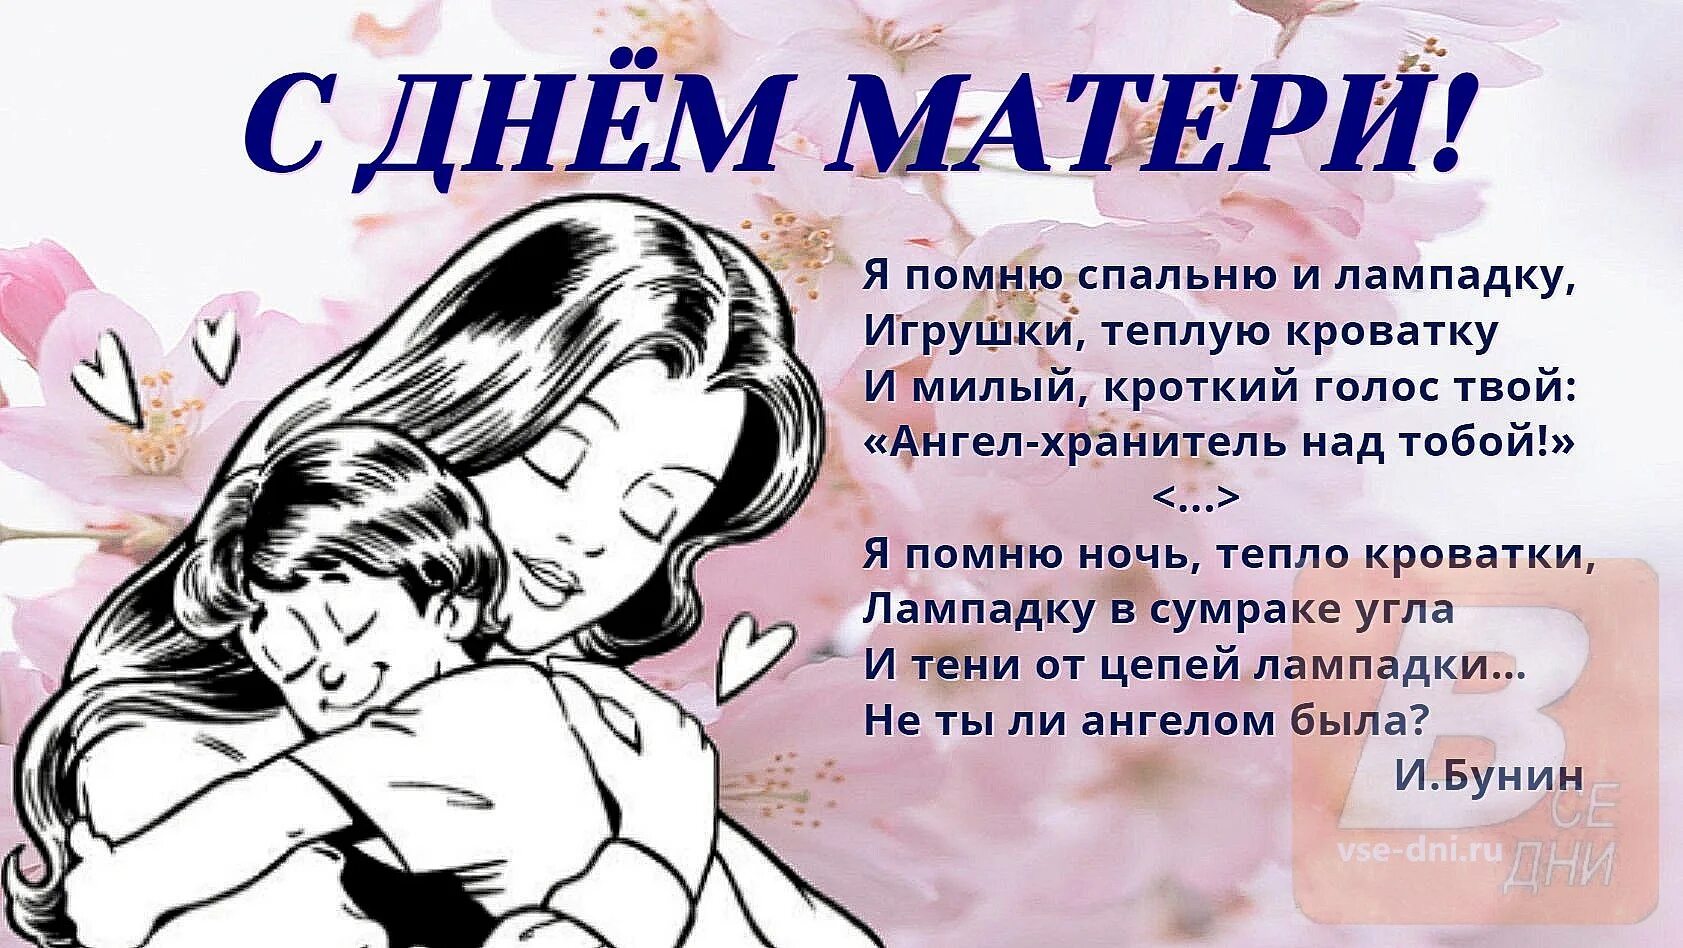 Имя 27 ноября. День матери. С днём матери поздравления. День матери в России. С днём матери картинки.